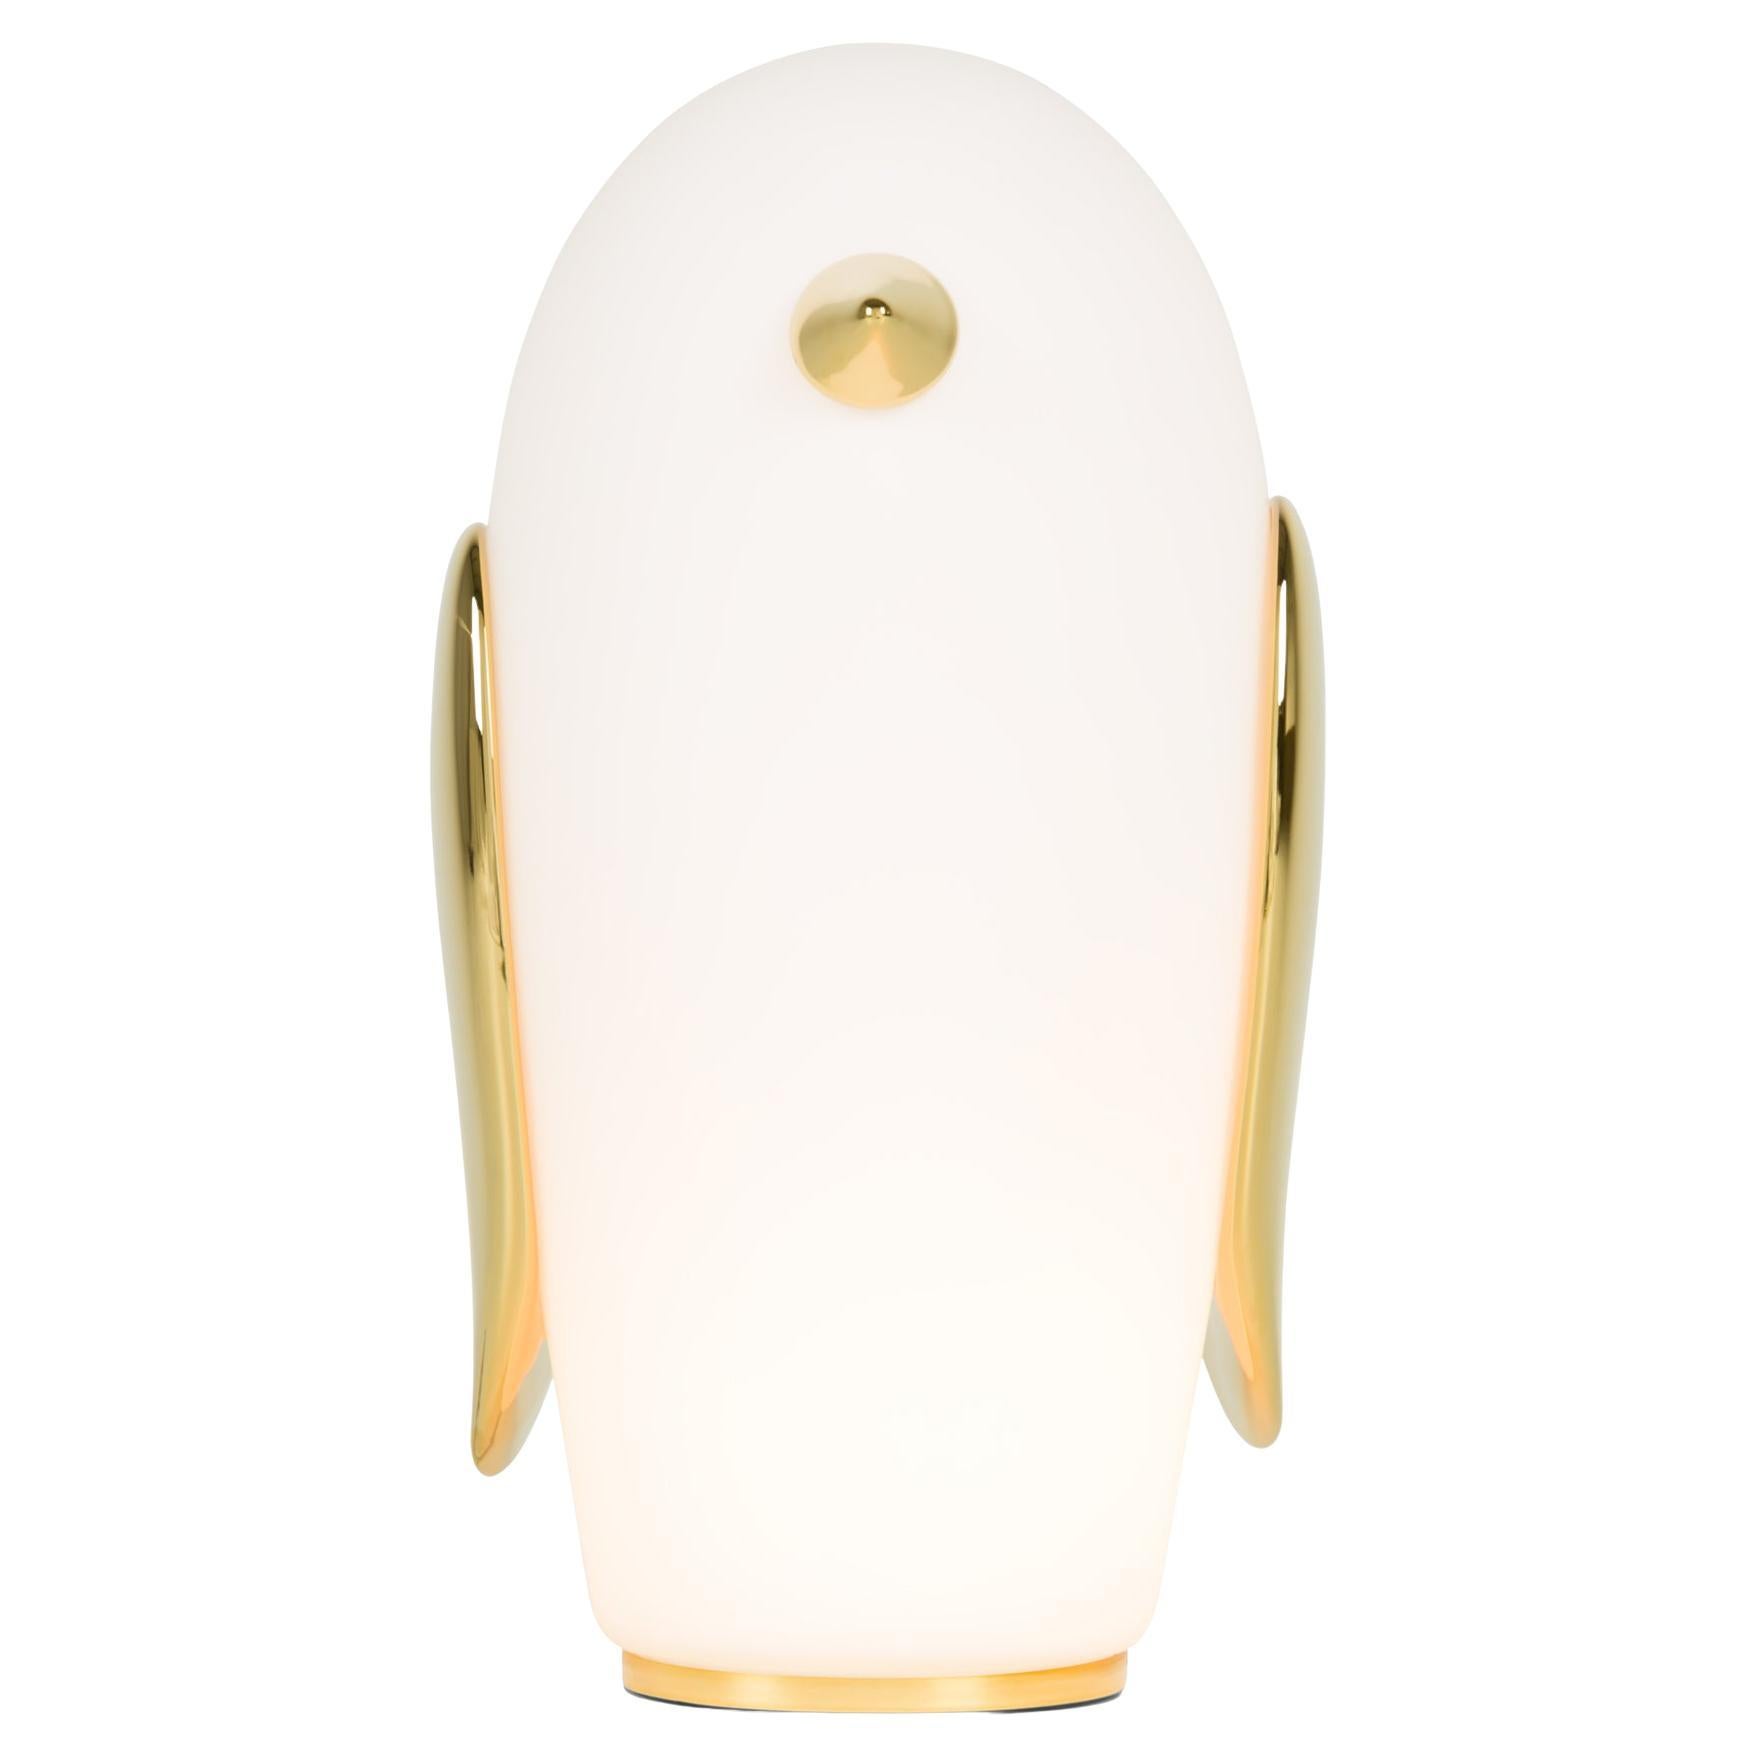 Moooi Pet Noot Noot Penguin Table Lamp in Matt White Glass with Golden Elements